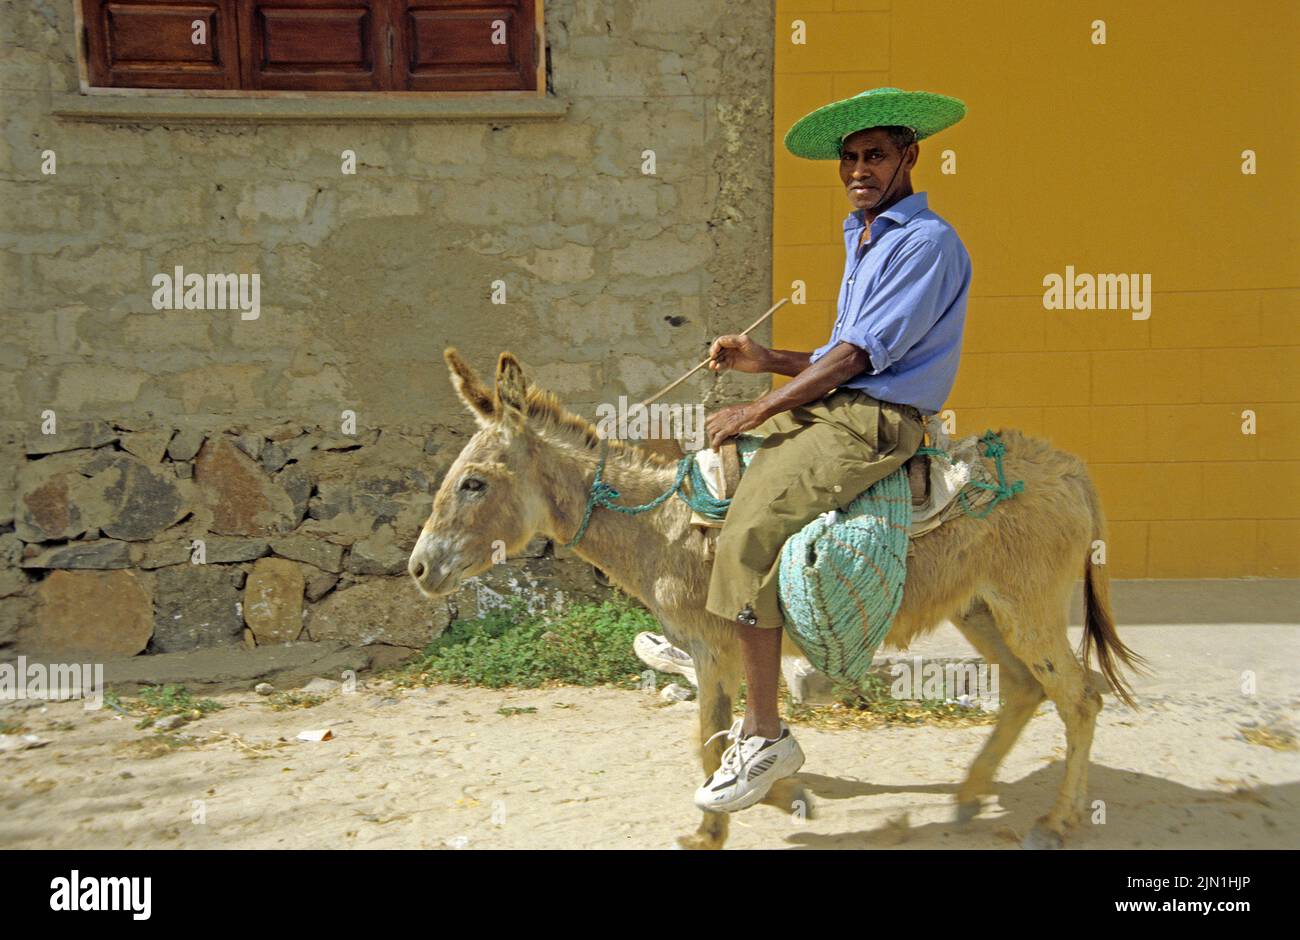 Einheimischer reitet auf einem Esel, Sal Rei, Boavista, Kapverden, Afrika | homme âgé sur un âne, Sal Rei, Boavista, Iles du Cap-Vert, Afrique Banque D'Images